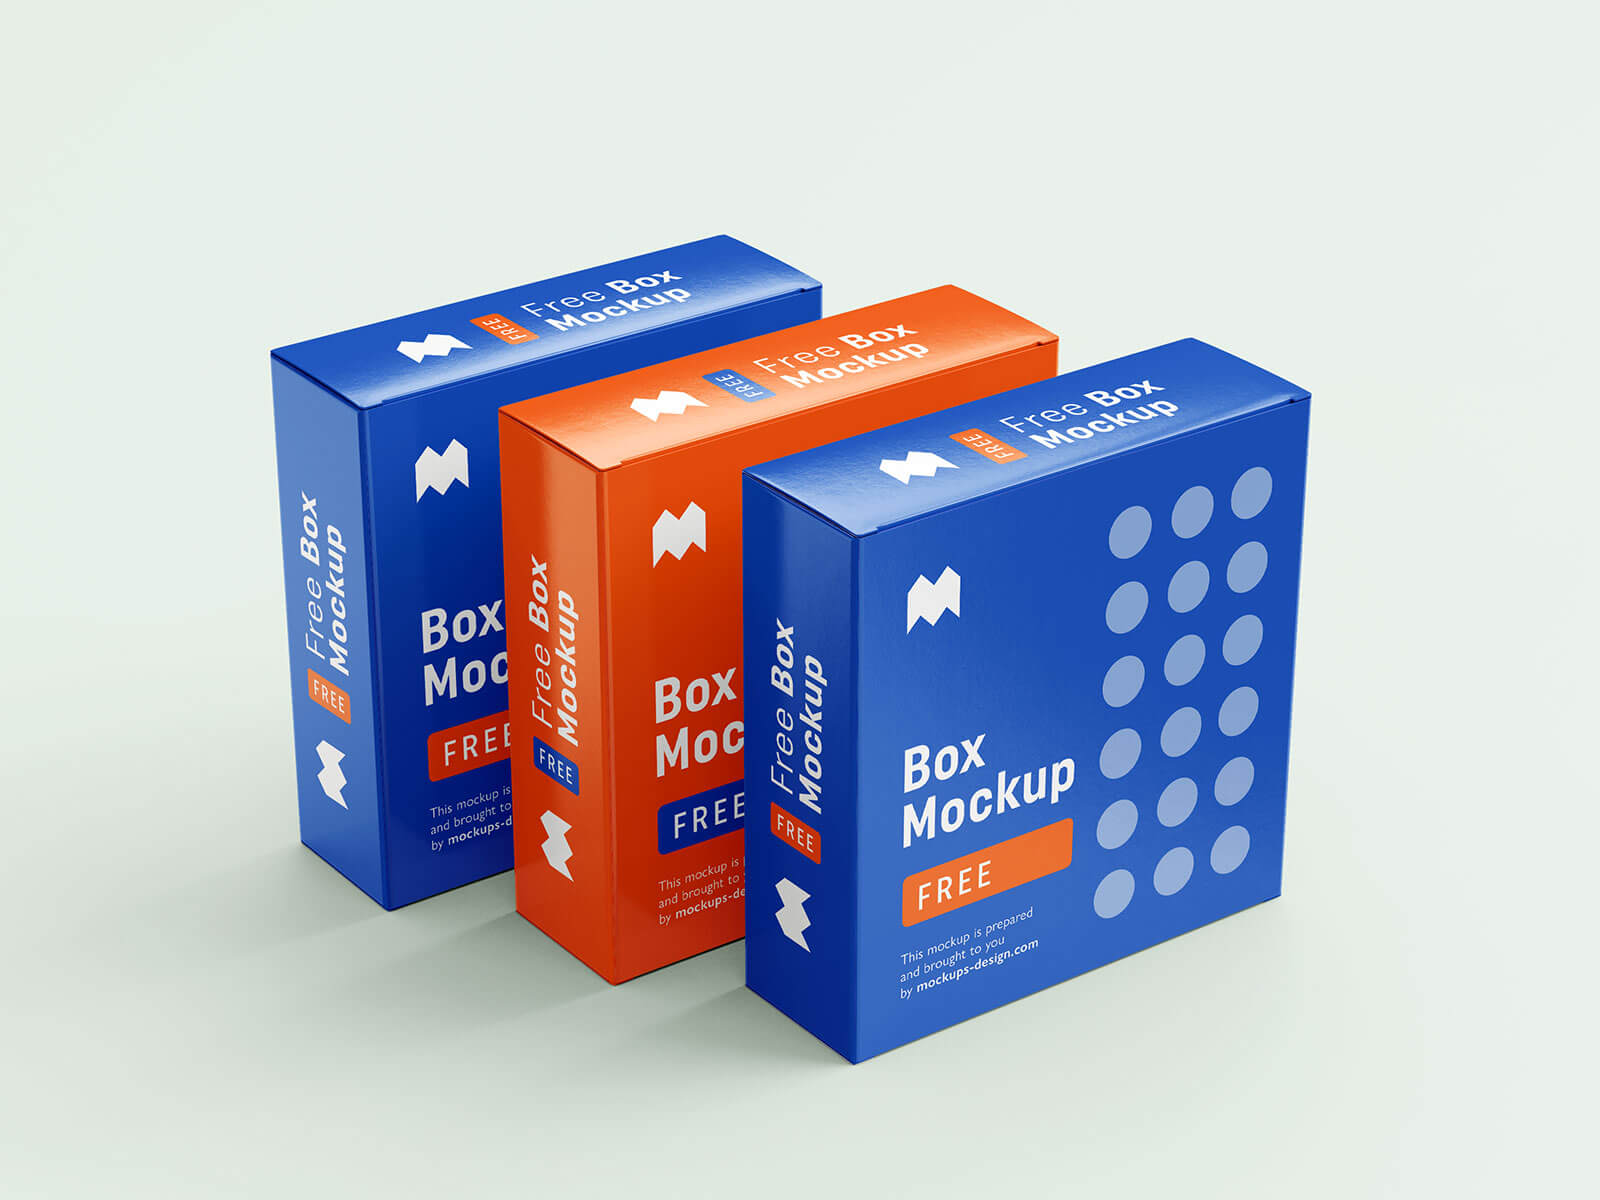 free-packaging-box-mockup-psd-set-6-psd-templates-good-mockups